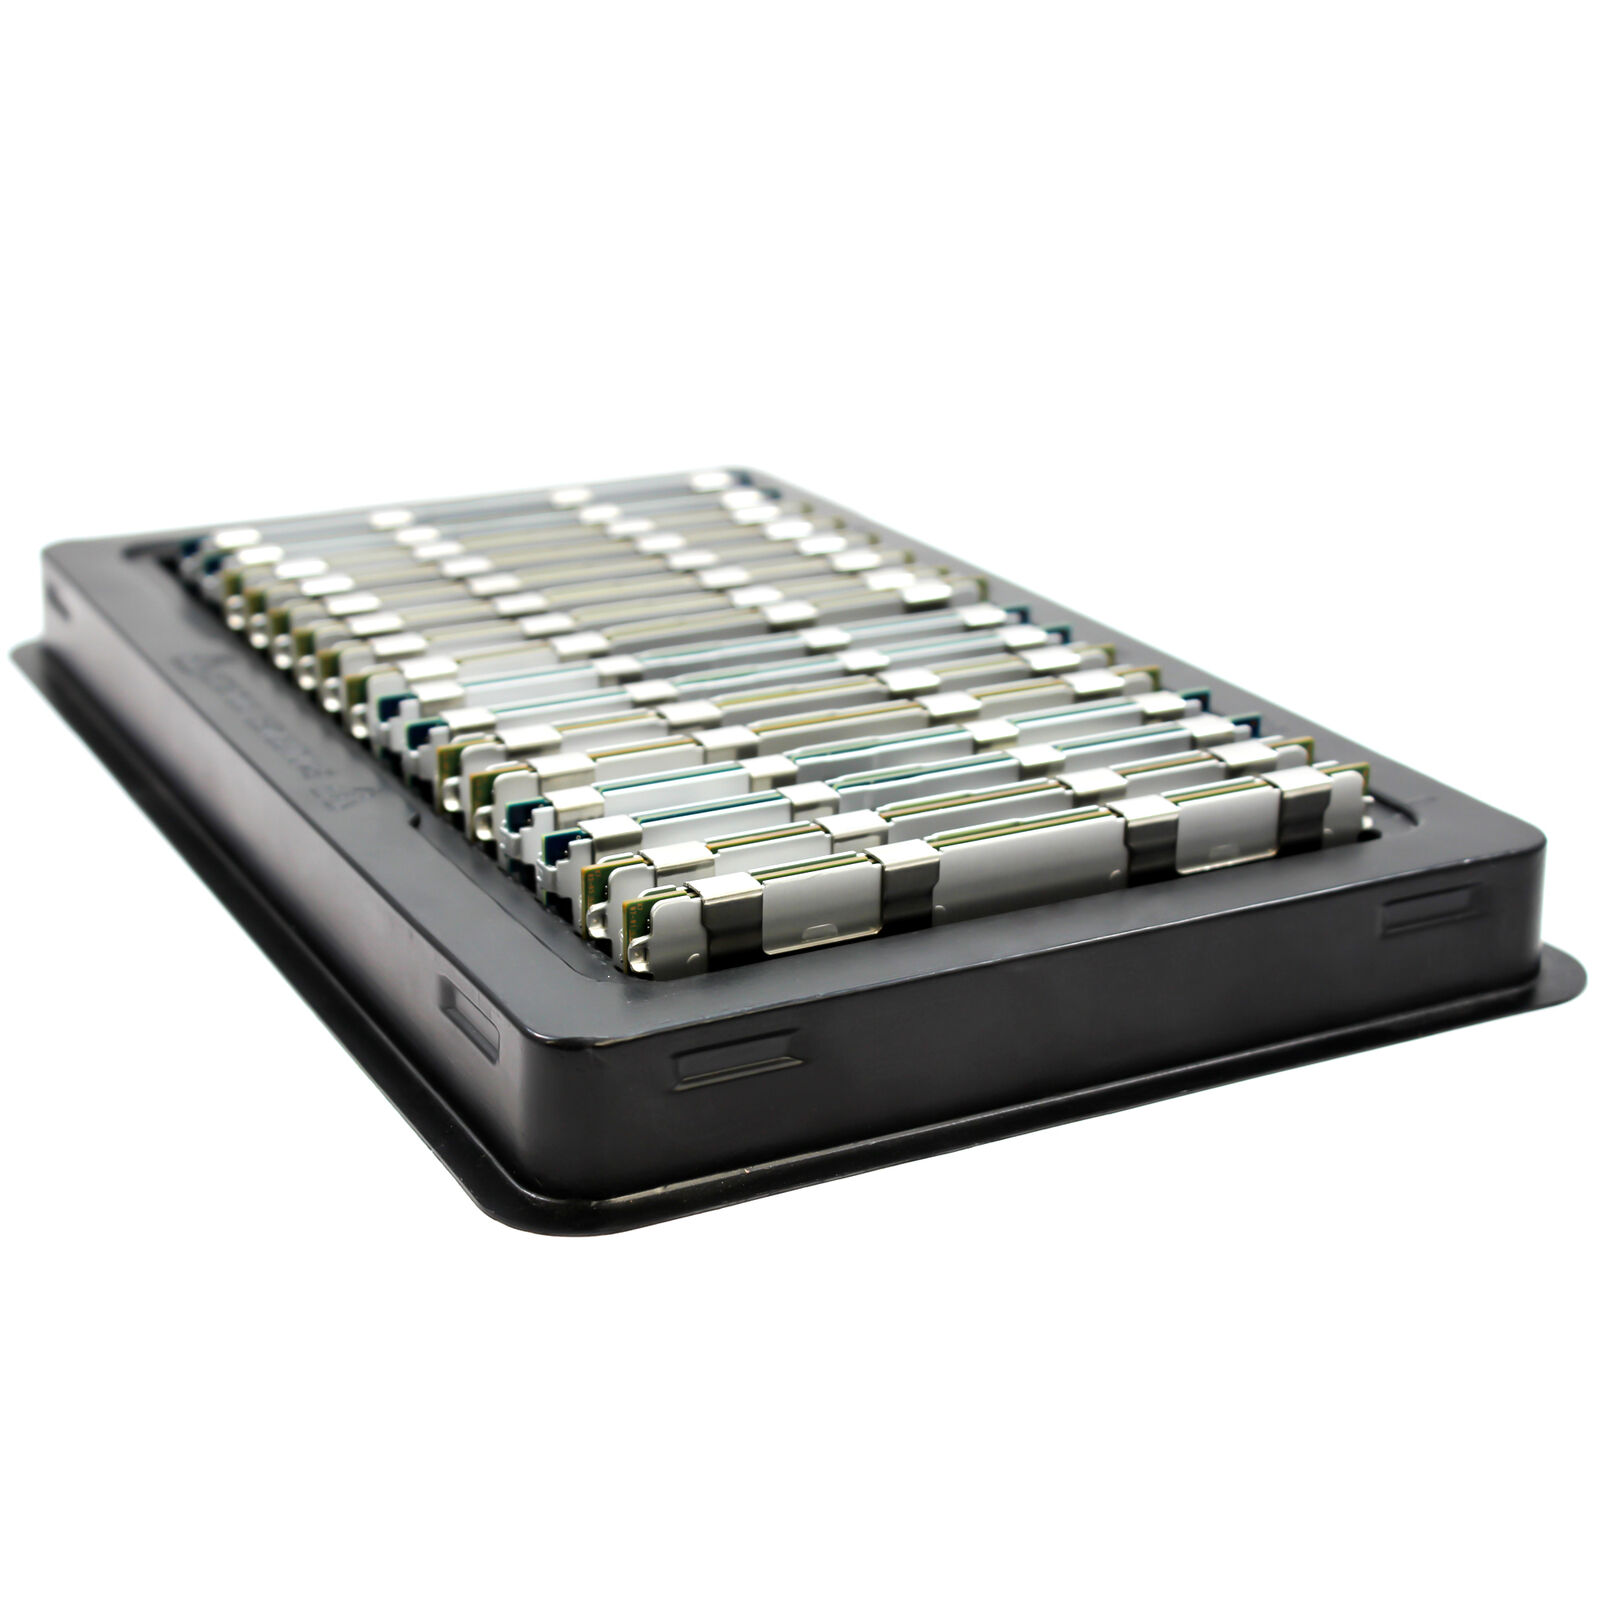 384GB (12x32GB) PC3-10600R DDR3 4Rx4 ECC Server Memory RDIMM for Asus ESC4000 G2